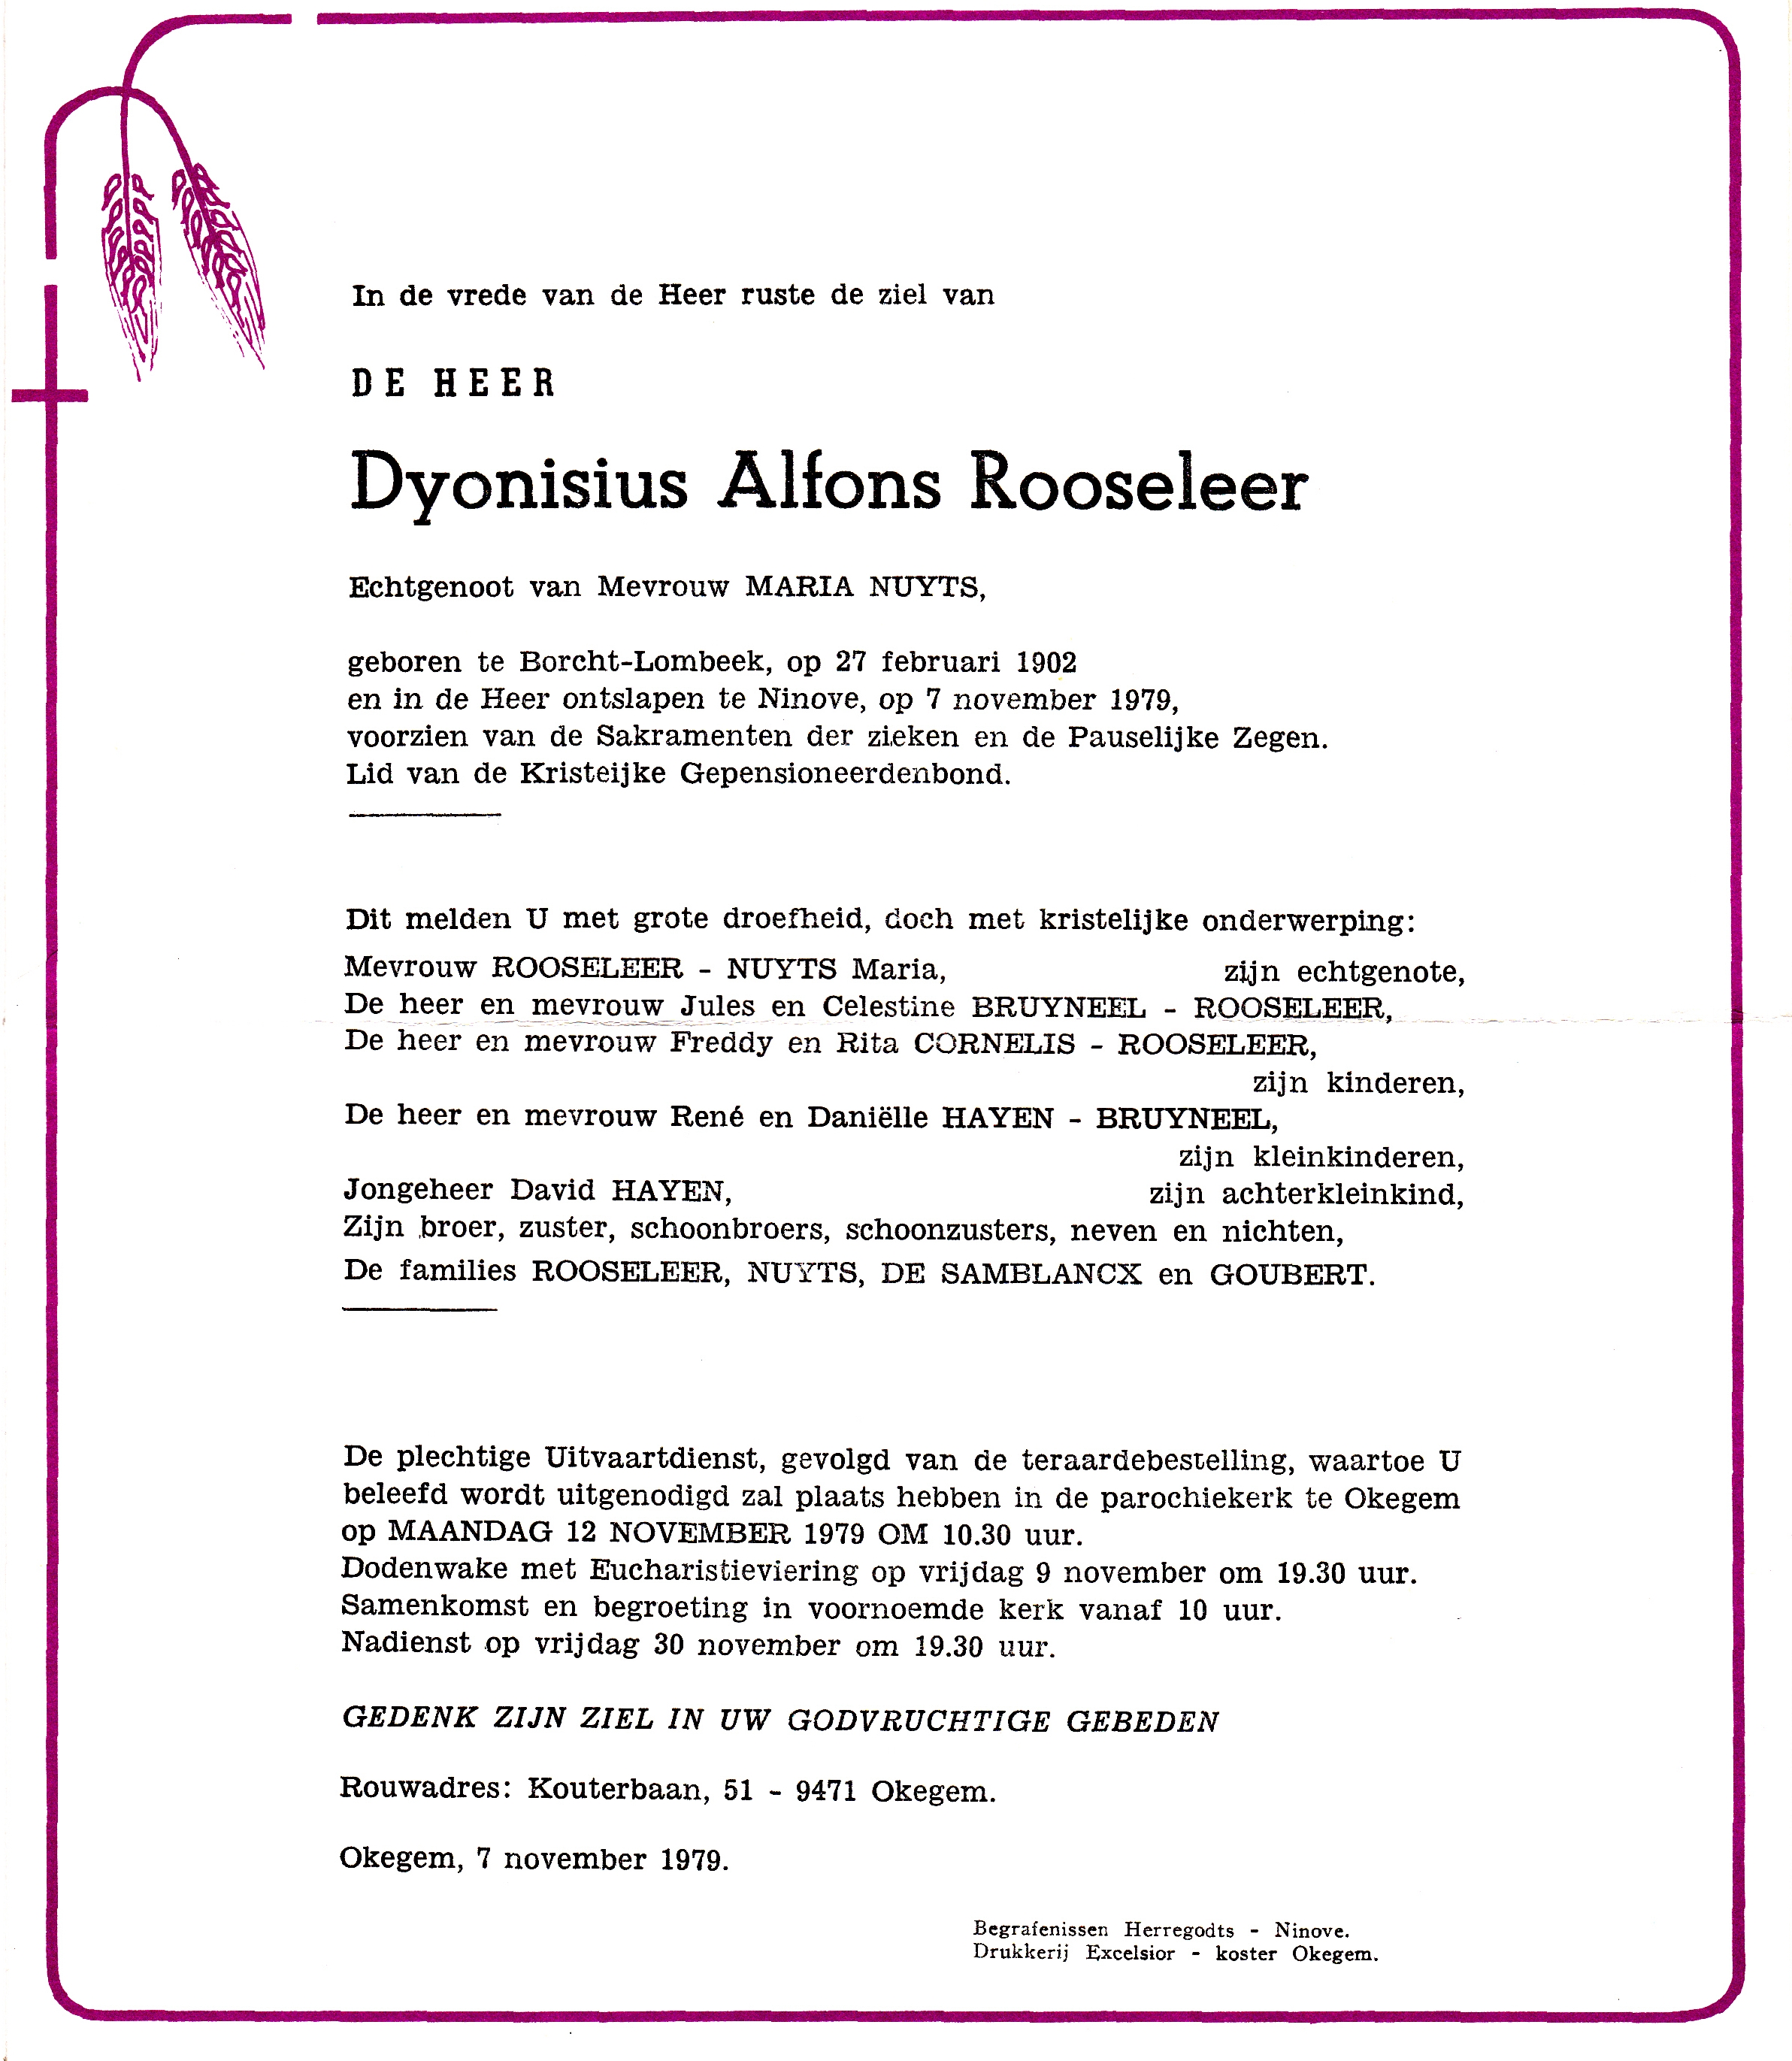 Rooseleer Dyonisius Aflons 